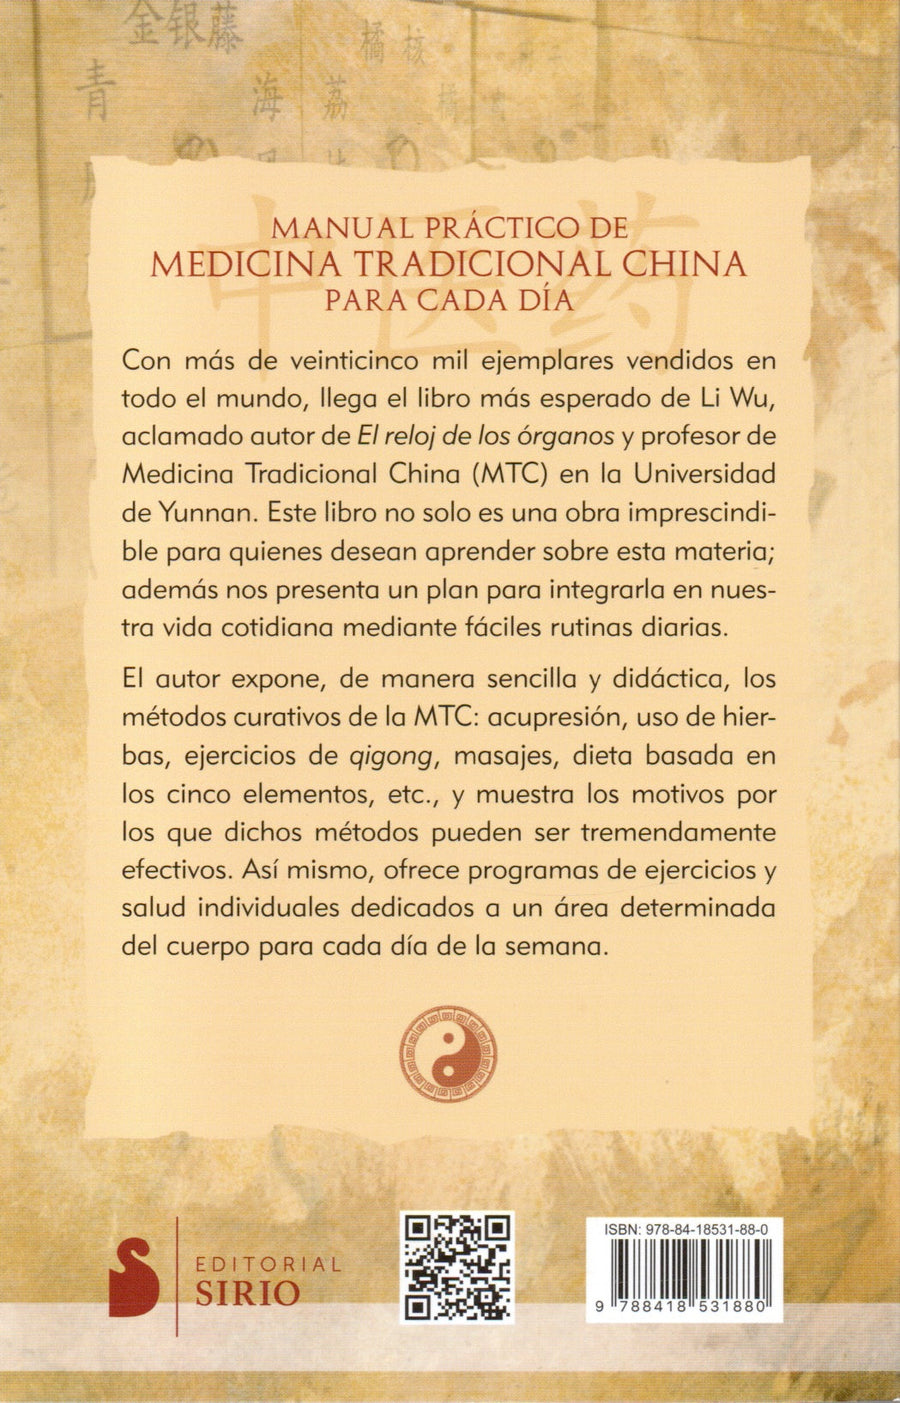 Manual Práctico de Medicina Tradicional China para cada día